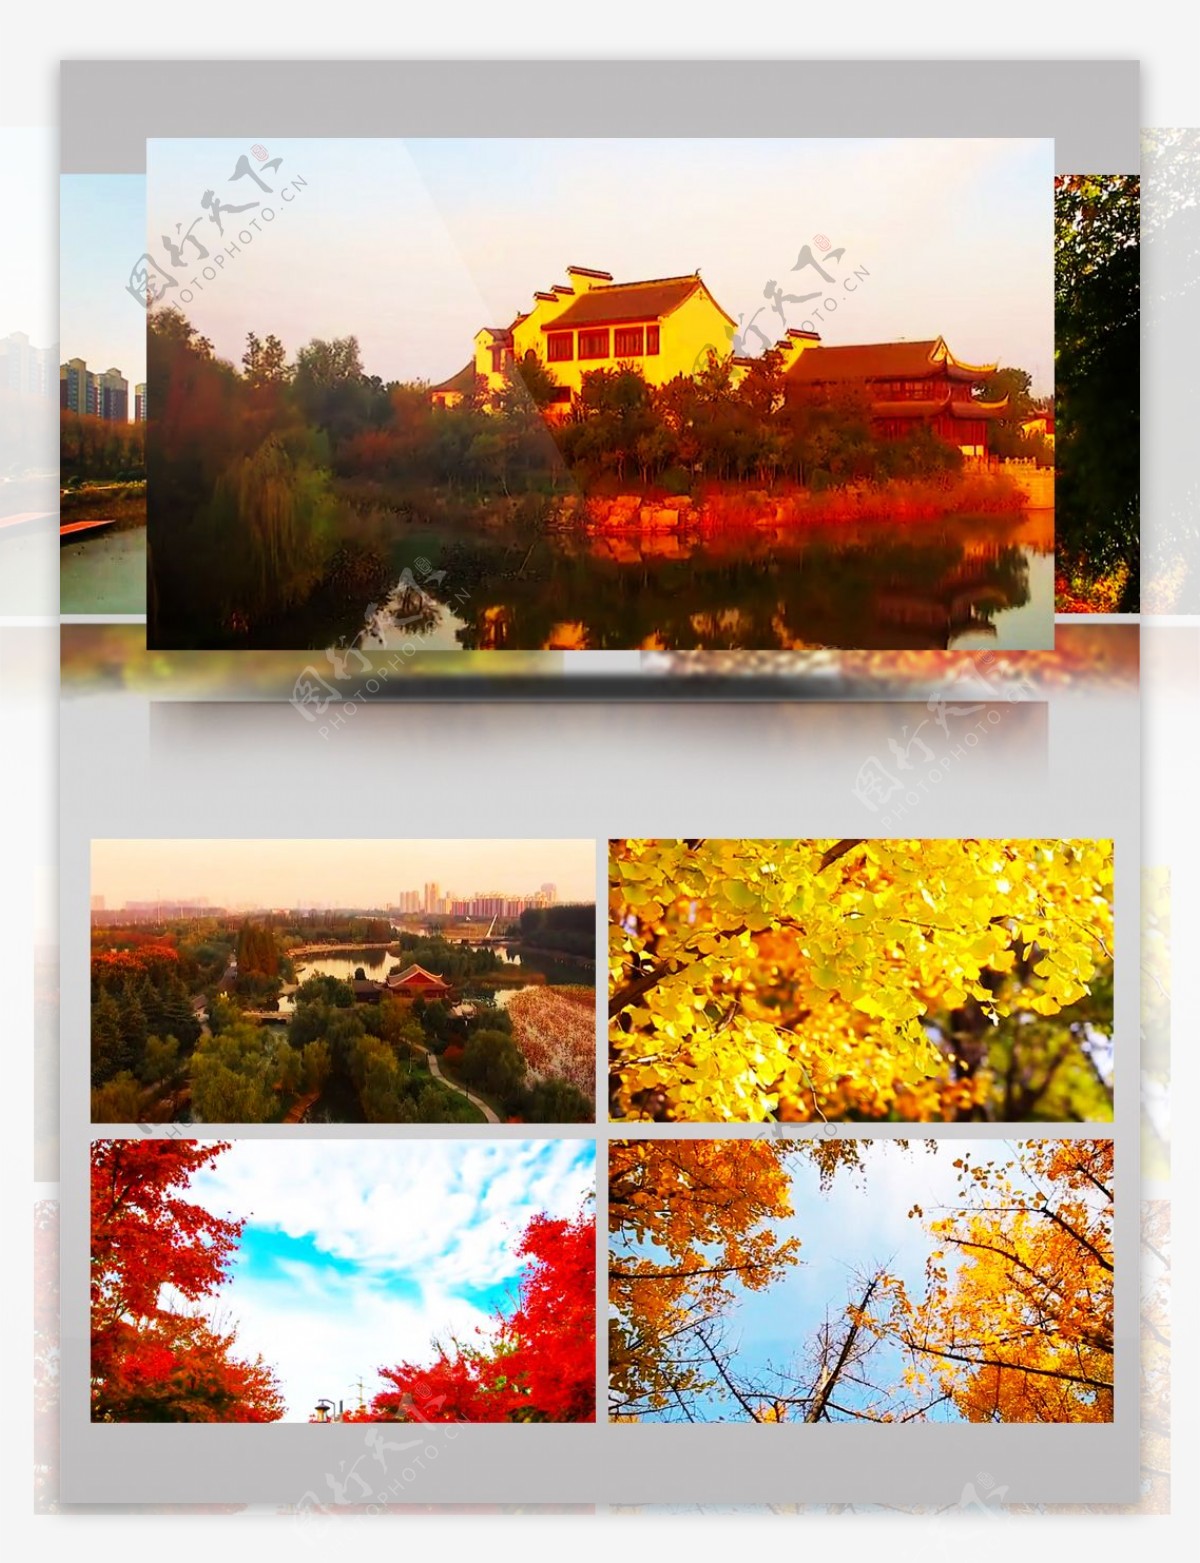 黄河岸边美丽的秋天景色